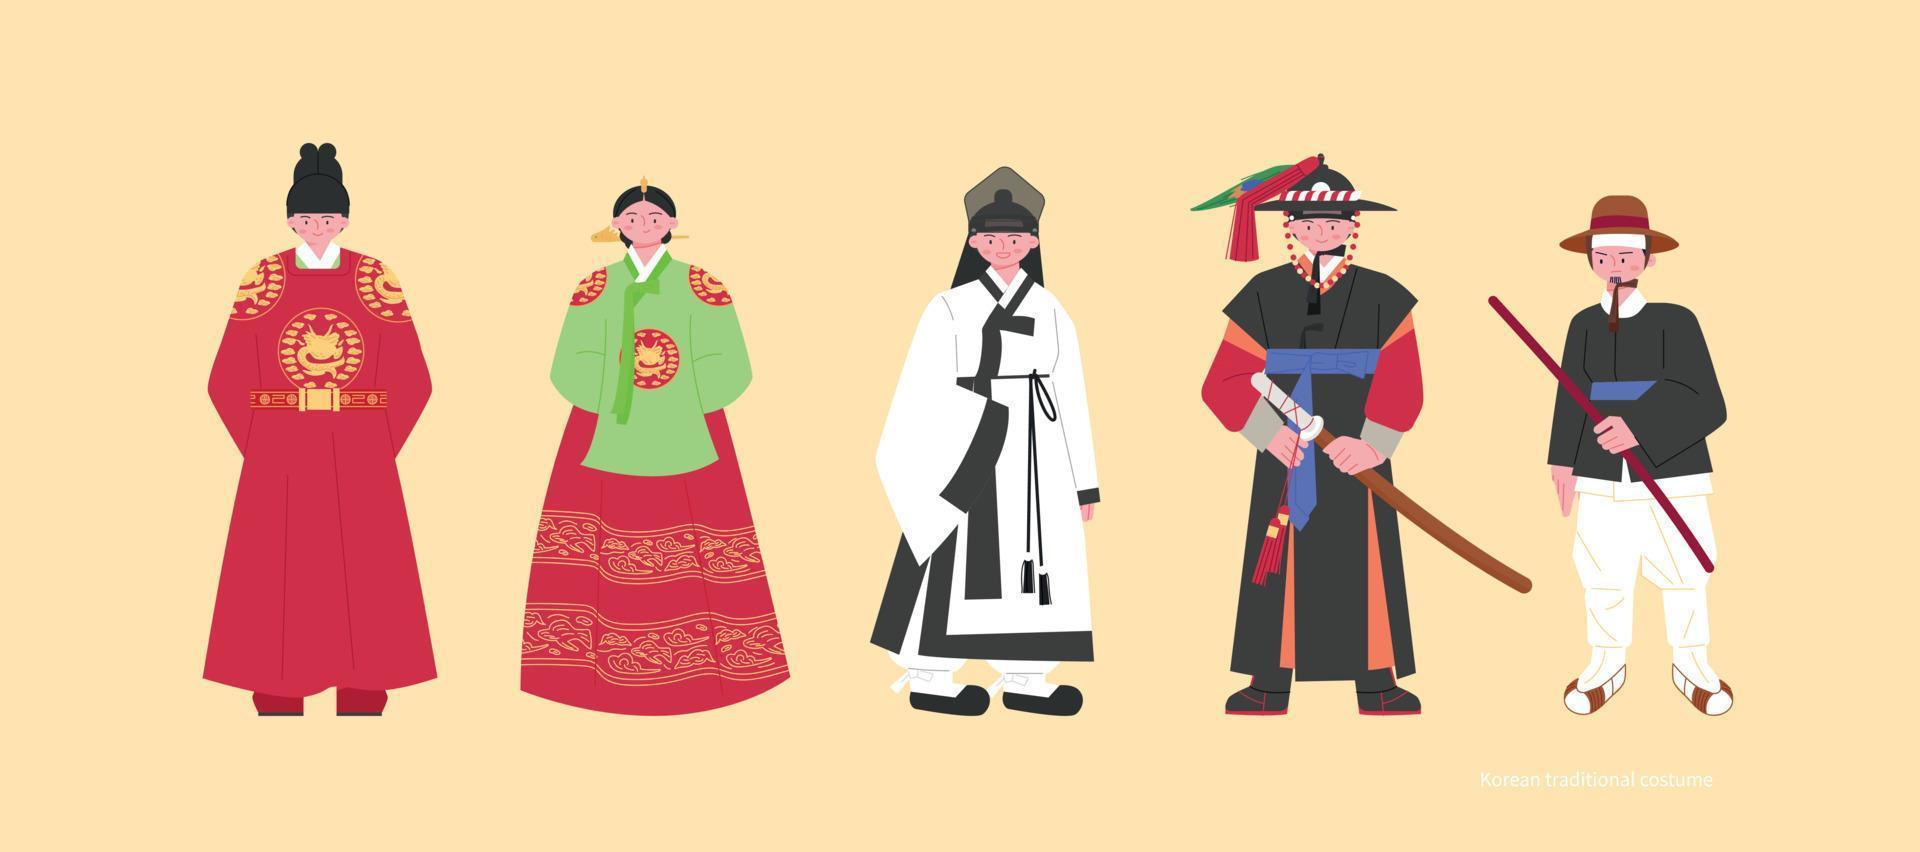 kostymer av de joseon dynasti. kungar och drottningar, studenter, polis kaptener och poliser. hand dragen vektor illustration.